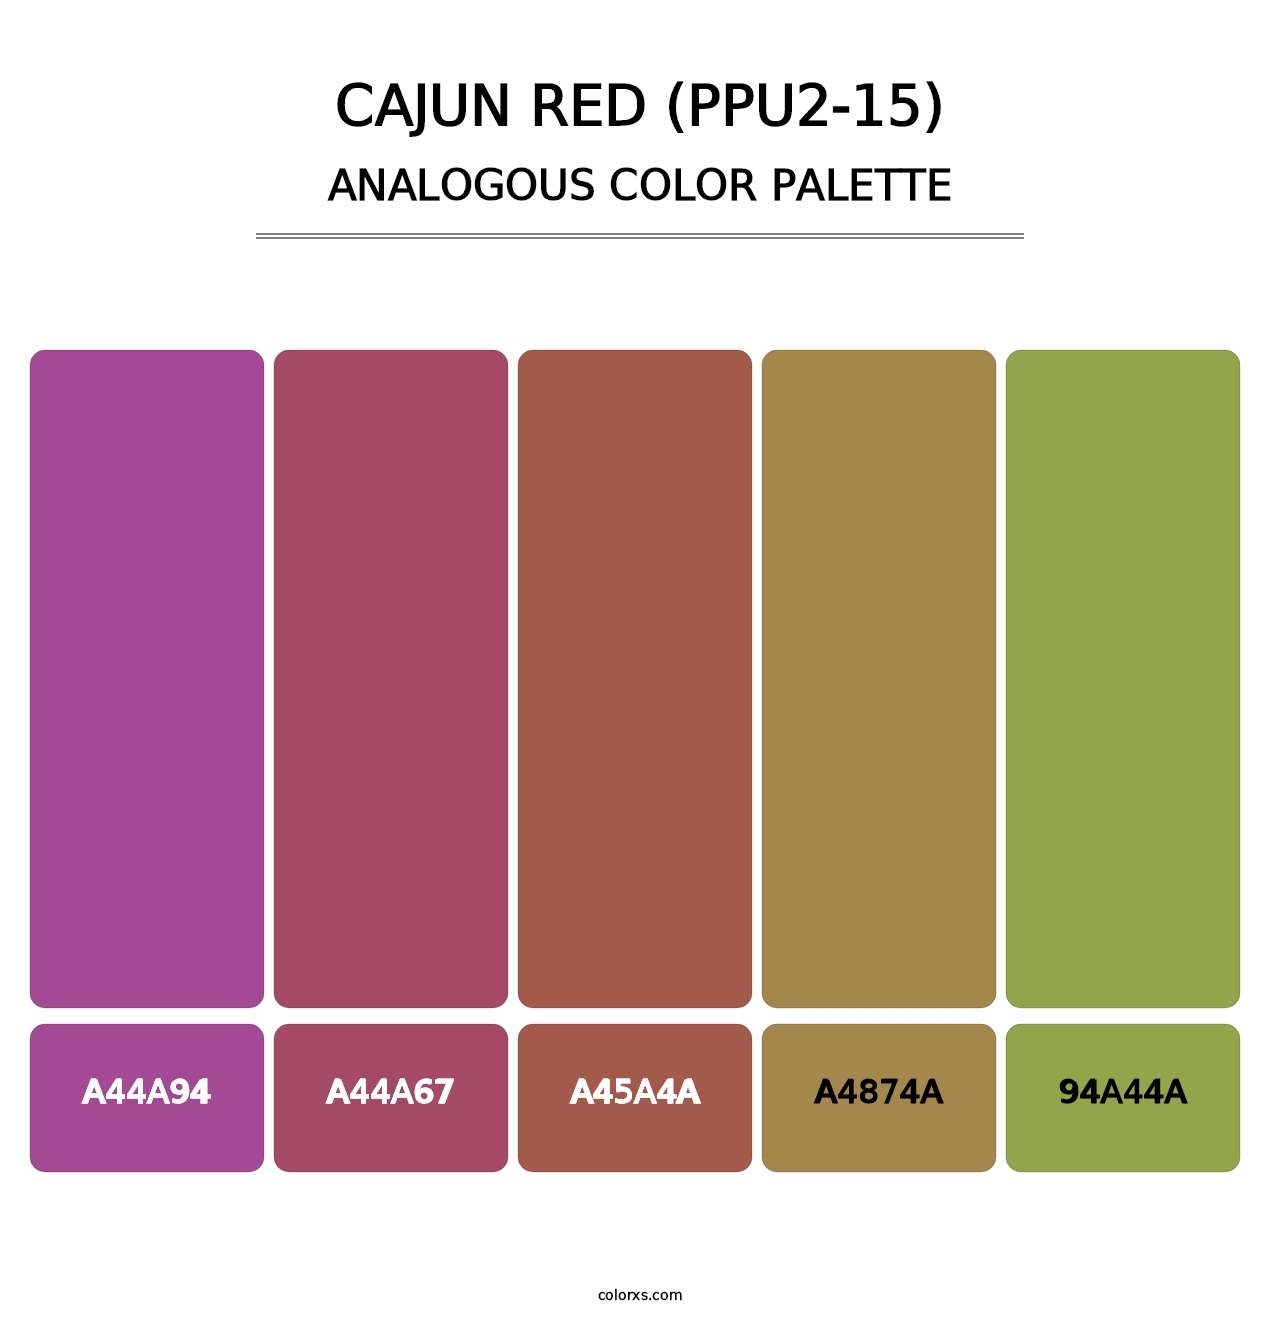 Cajun Red (PPU2-15) - Analogous Color Palette